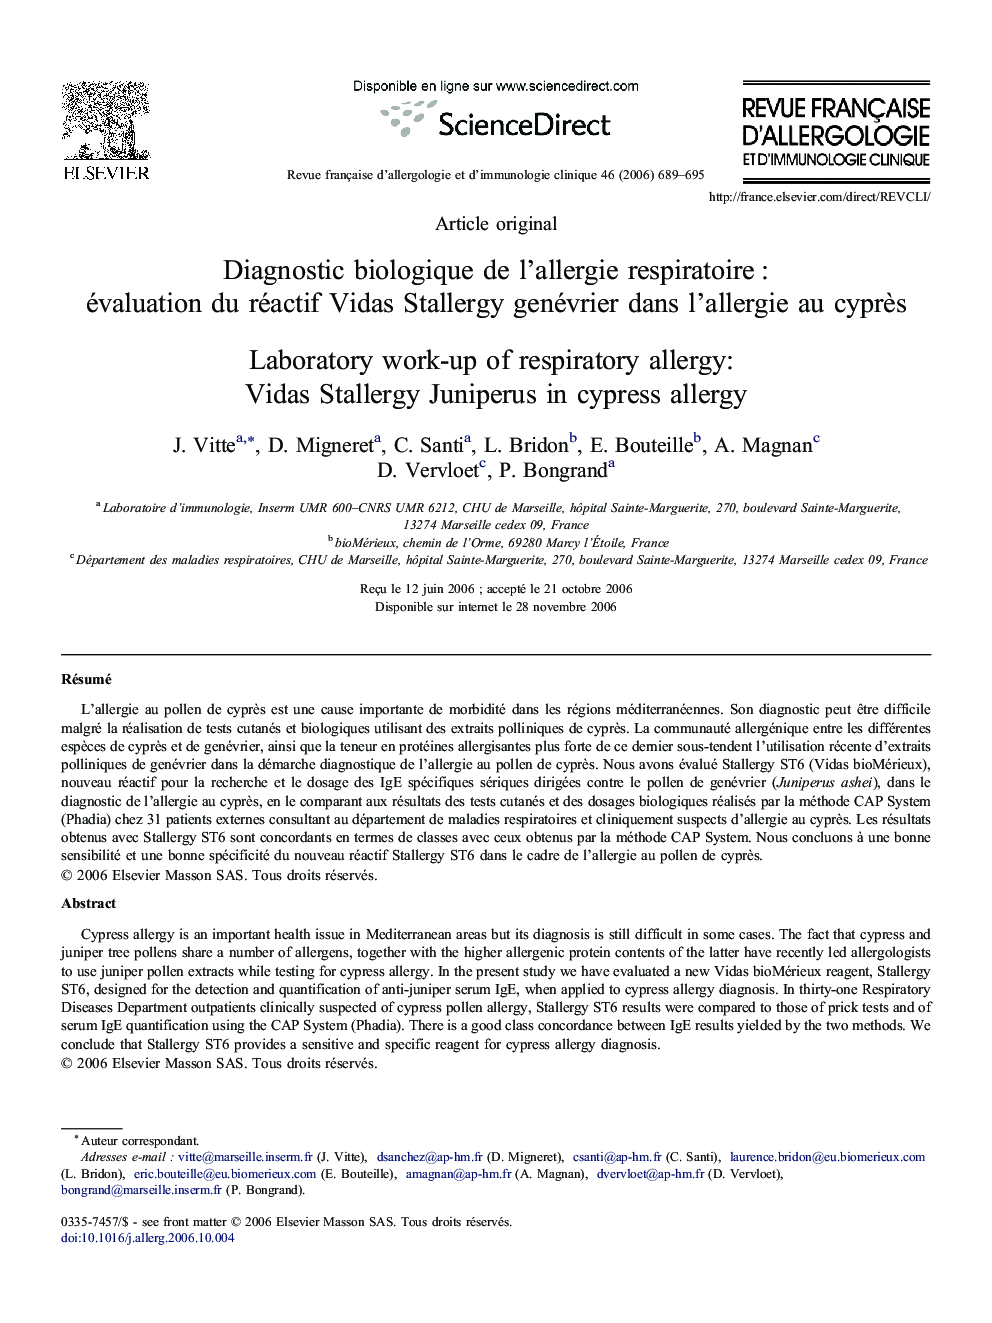 Diagnostic biologique de l'allergie respiratoire : évaluation du réactif Vidas Stallergy genévrier dans l'allergie au cyprès